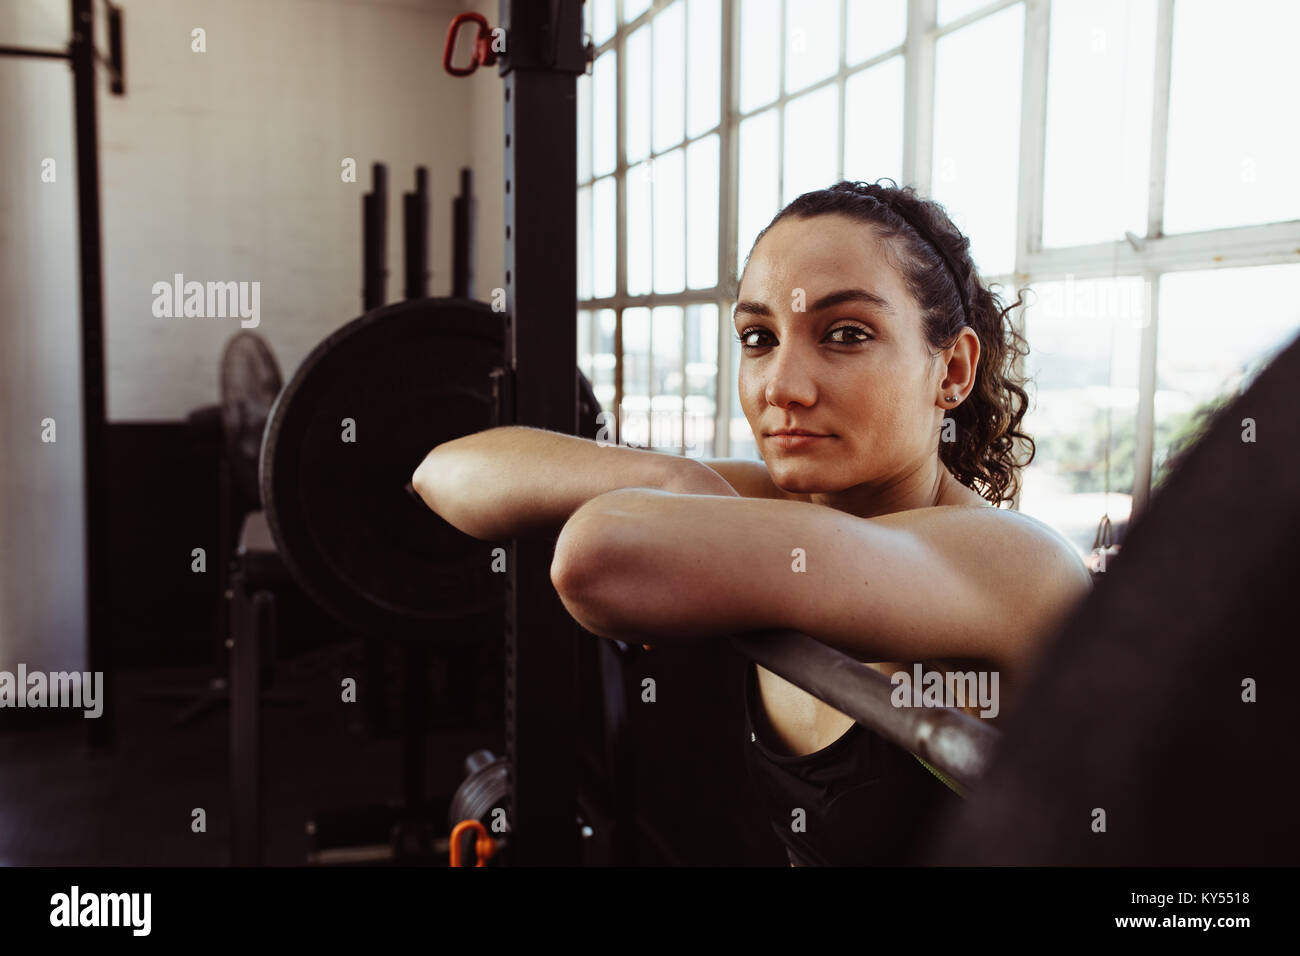 Young woman leaning over barbell après une formation dans une salle de sport. Prise femelle reste après l'entraînement physique dans un club de santé. Banque D'Images